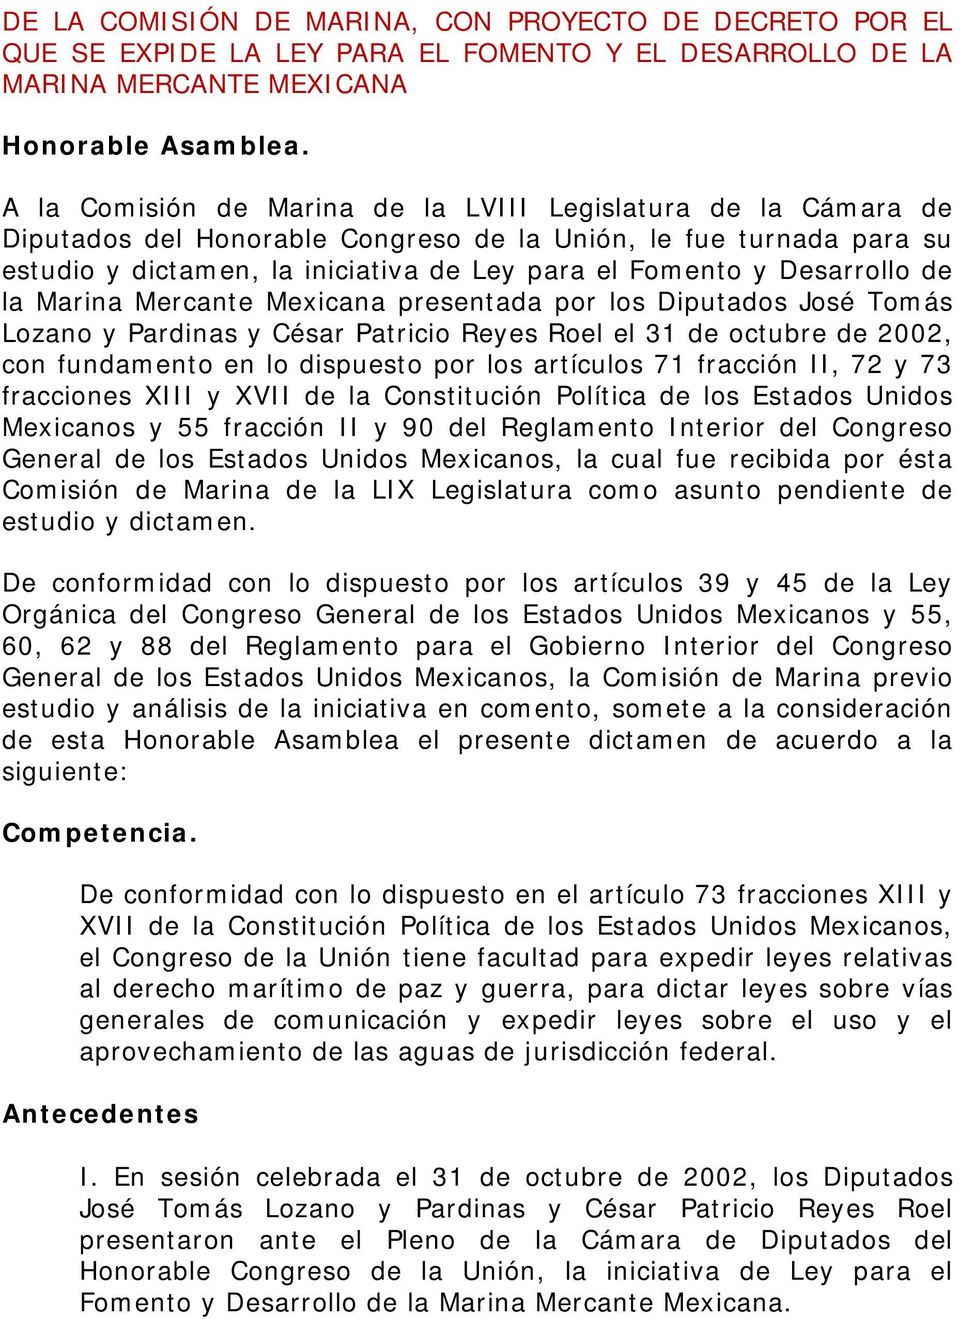 Desarrollo de la Marina Mercante Mexicana presentada por los Diputados José Tomás Lozano y Pardinas y César Patricio Reyes Roel el 31 de octubre de 2002, con fundamento en lo dispuesto por los